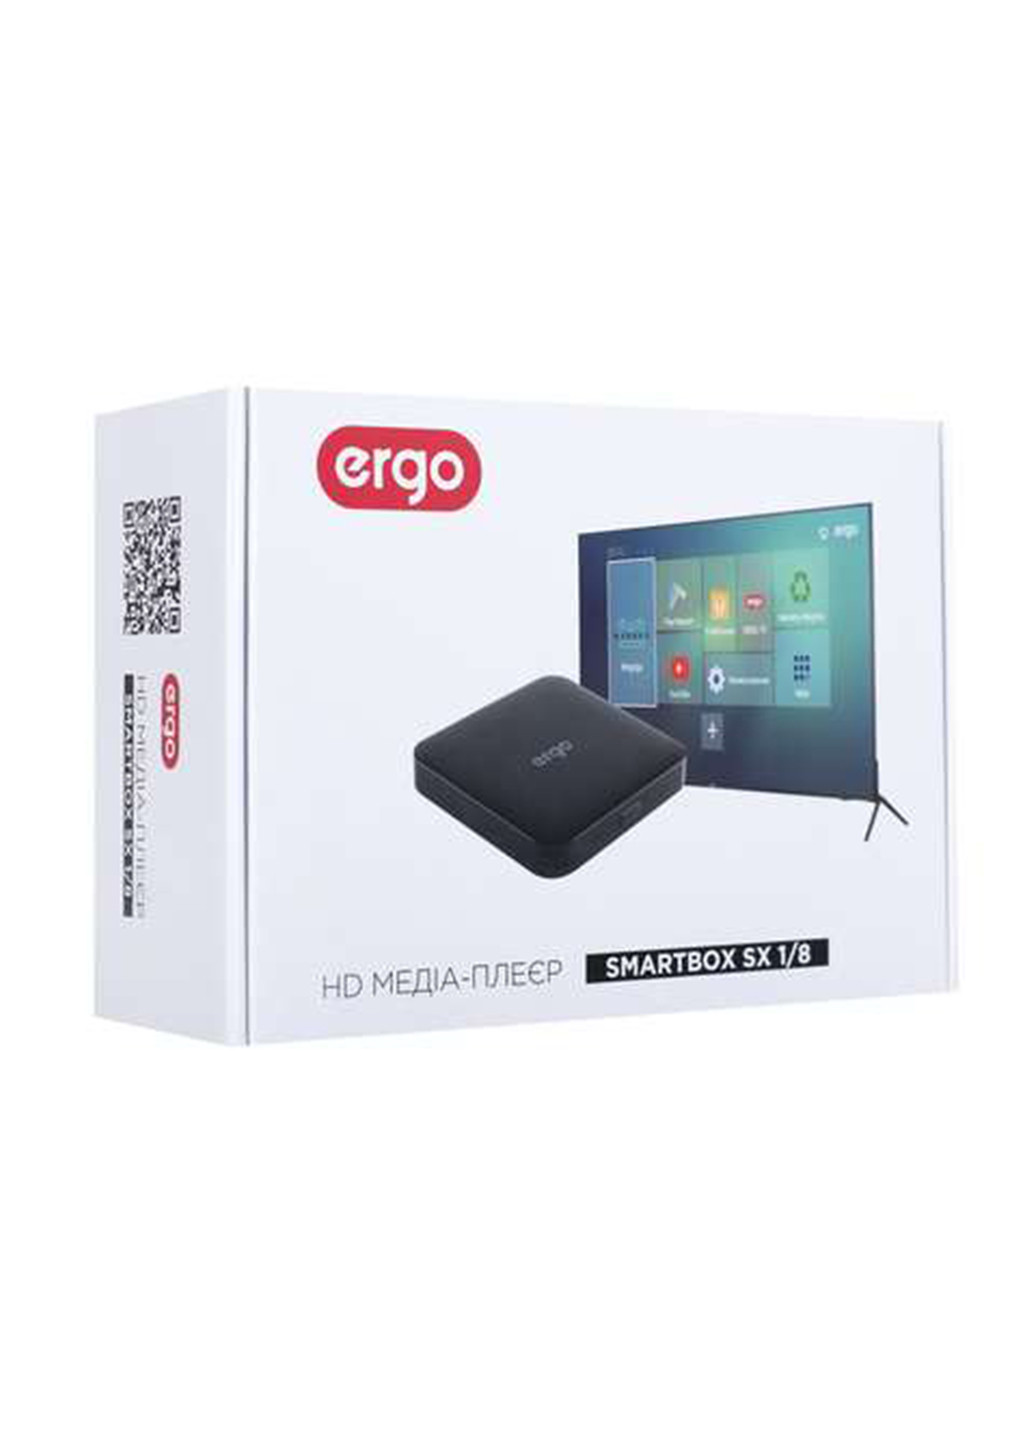 Медиаплеер Ergo media player smartbox sx 1/8 (141314075)